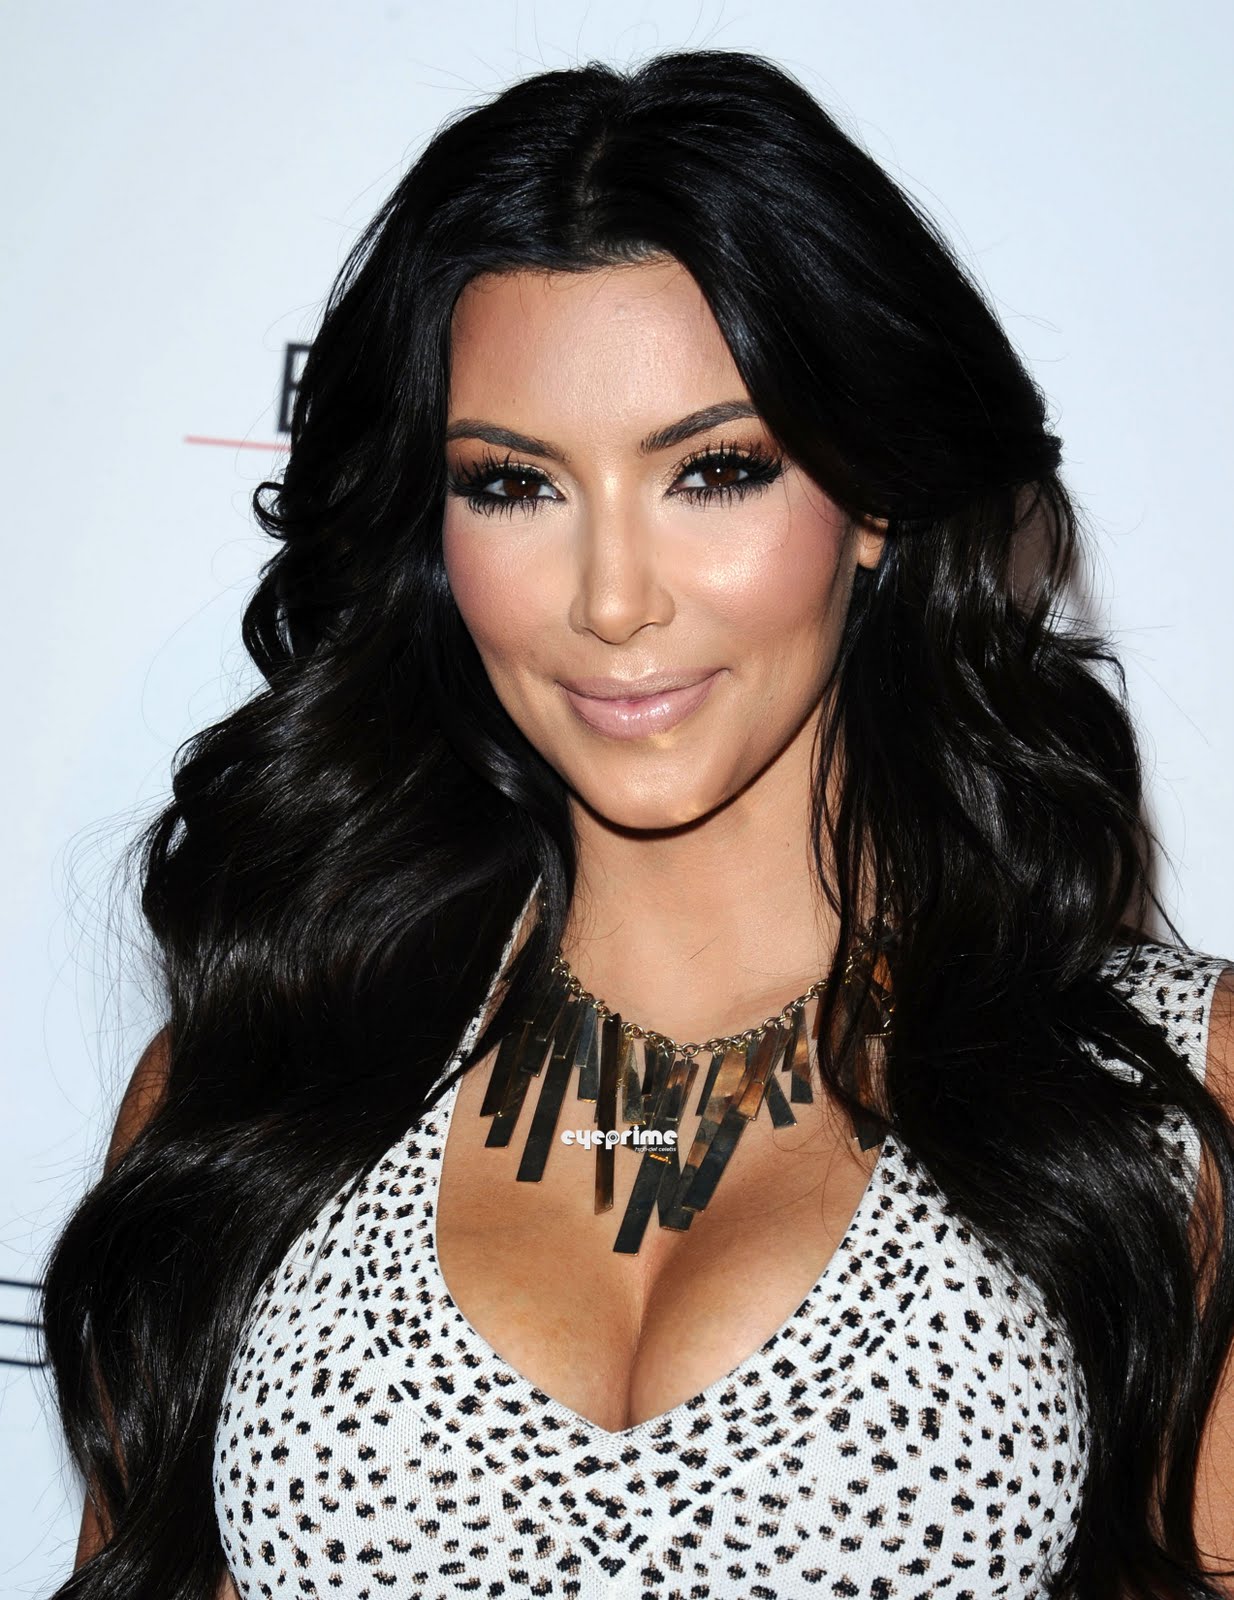 Kim Kardashian sexy photo